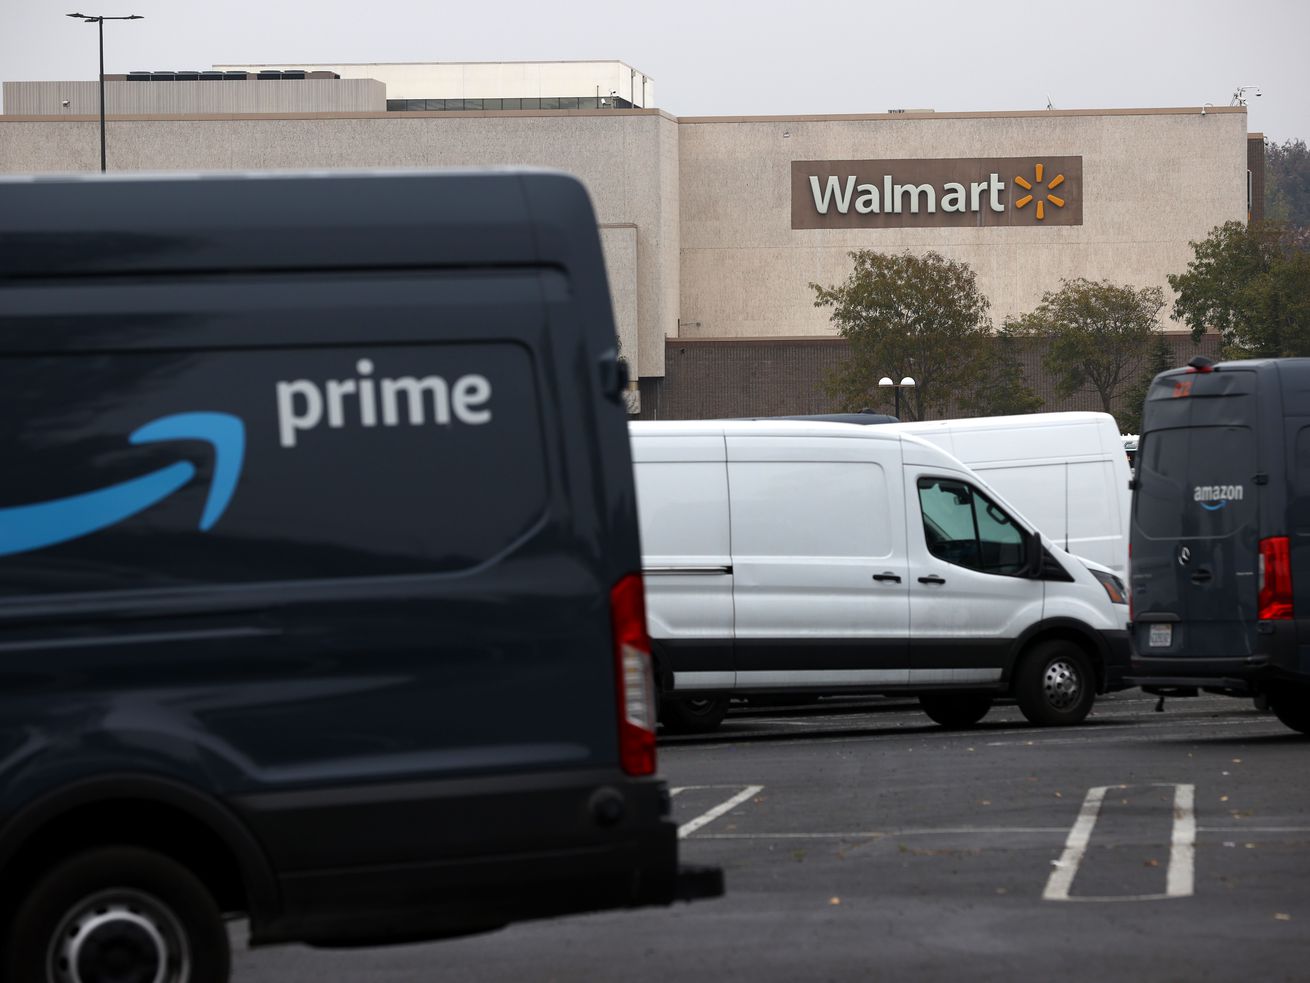 Amazon vans in front of a Walmart store.